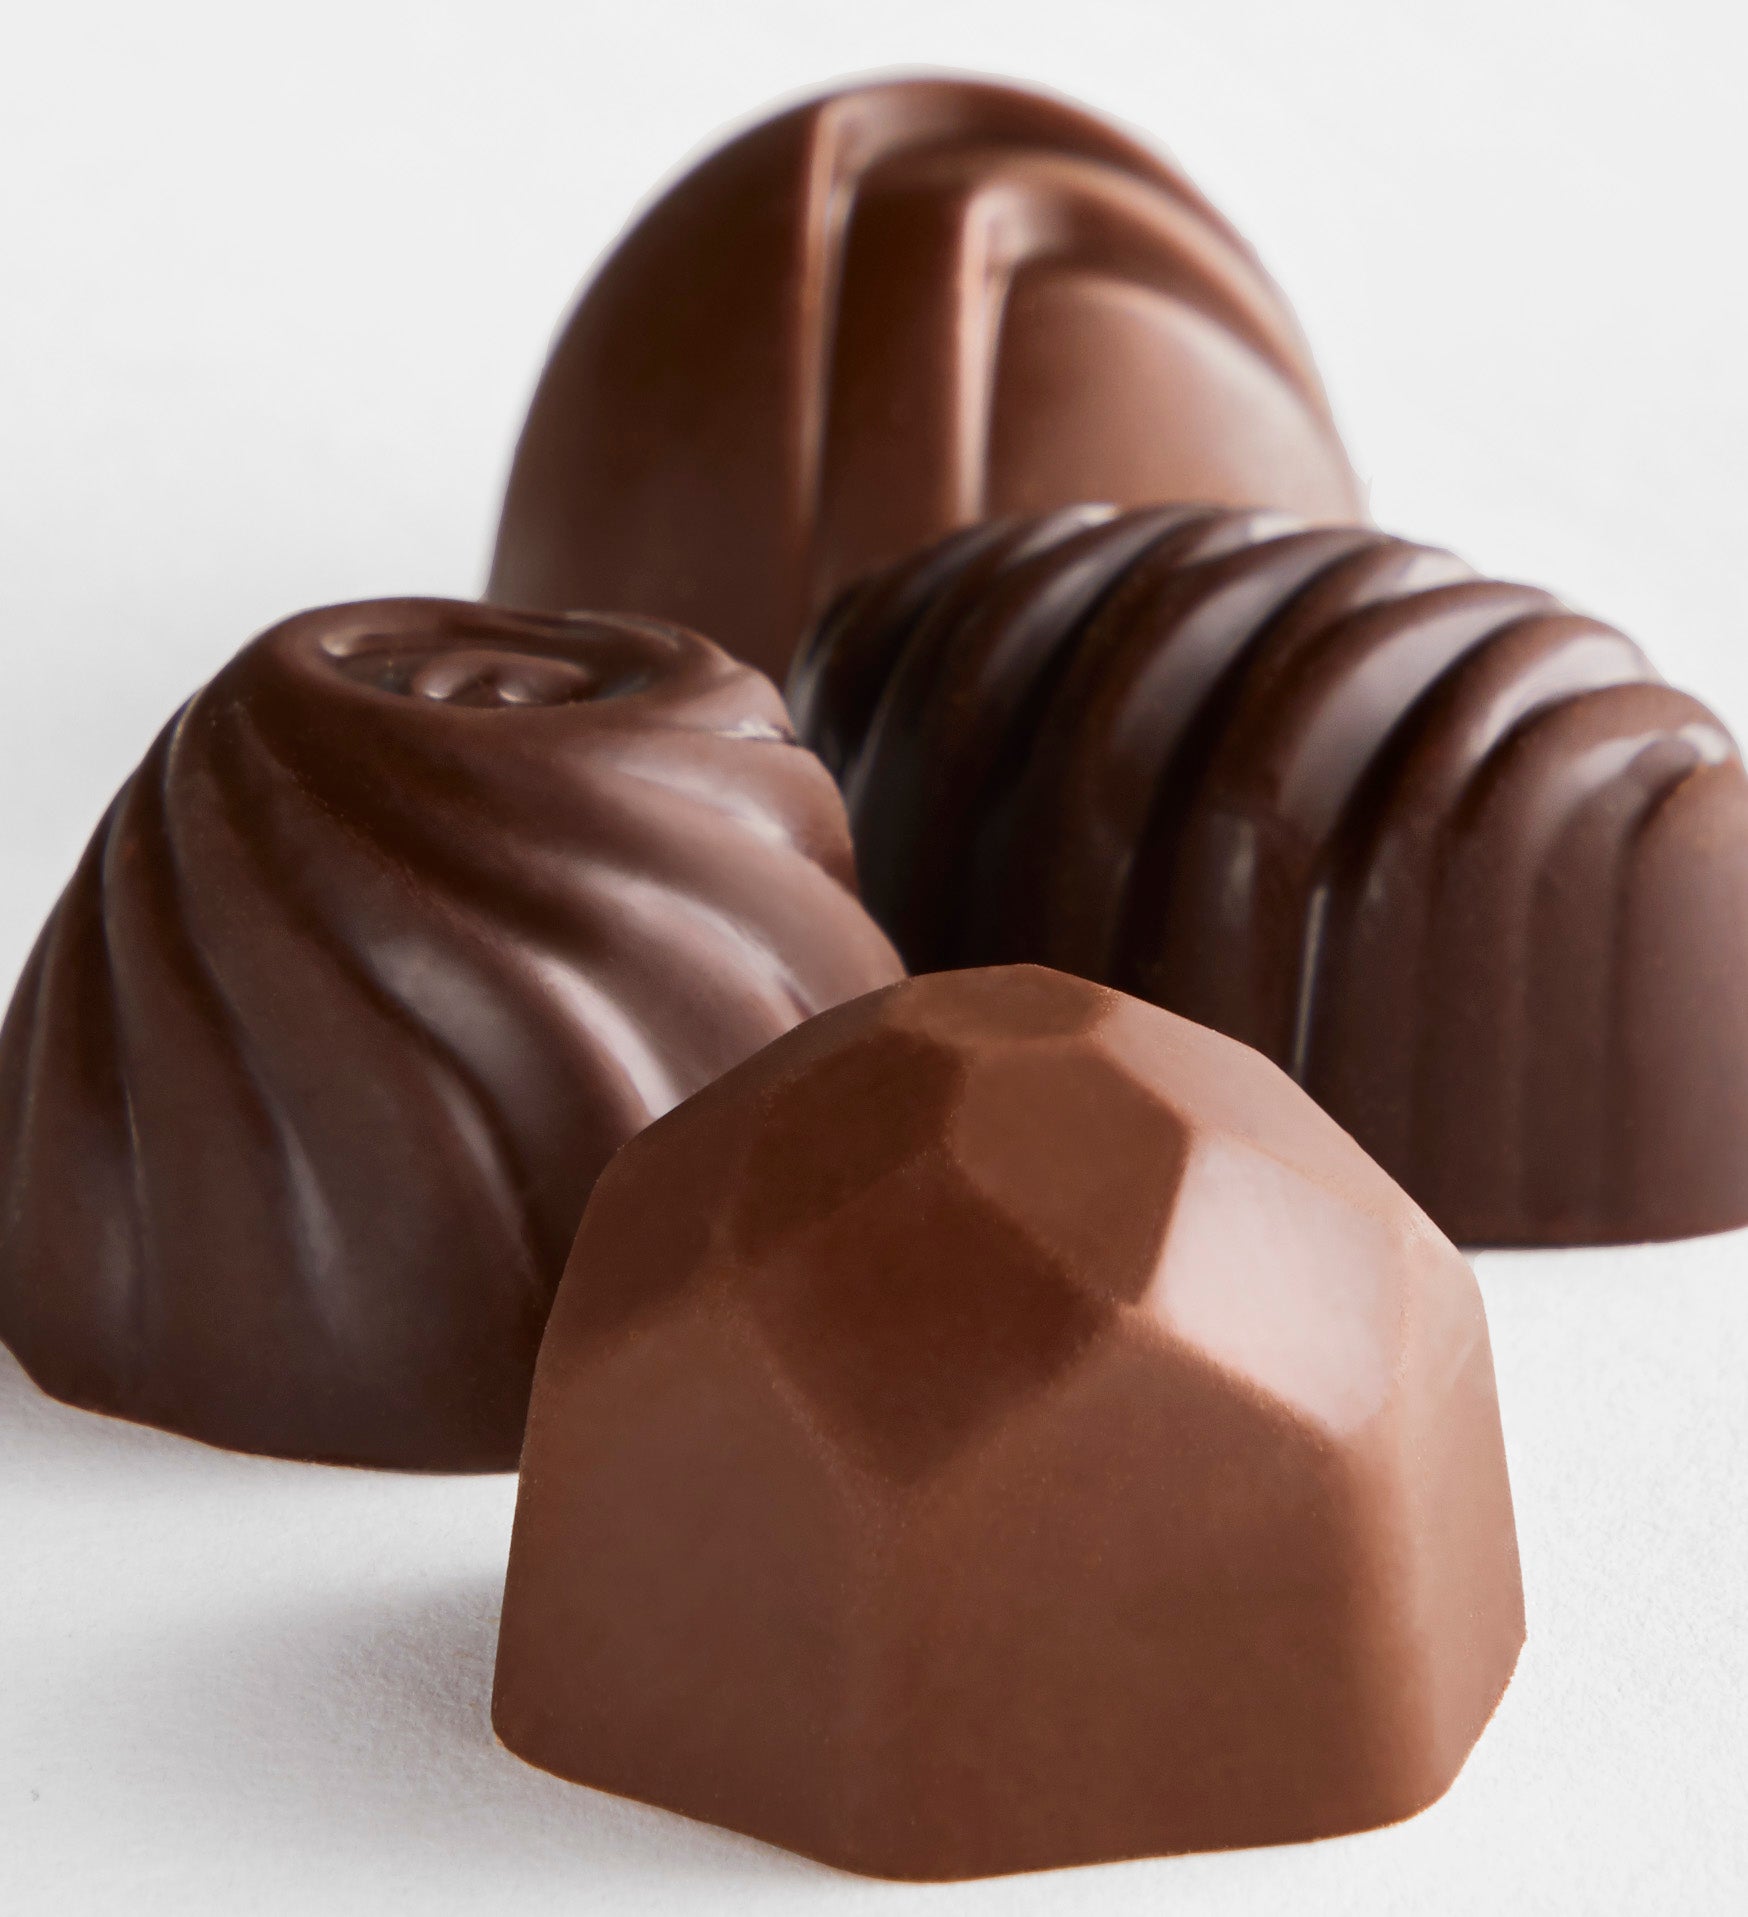 Simply Chocolate® Sending Sunshine 17pc Chocolate Box